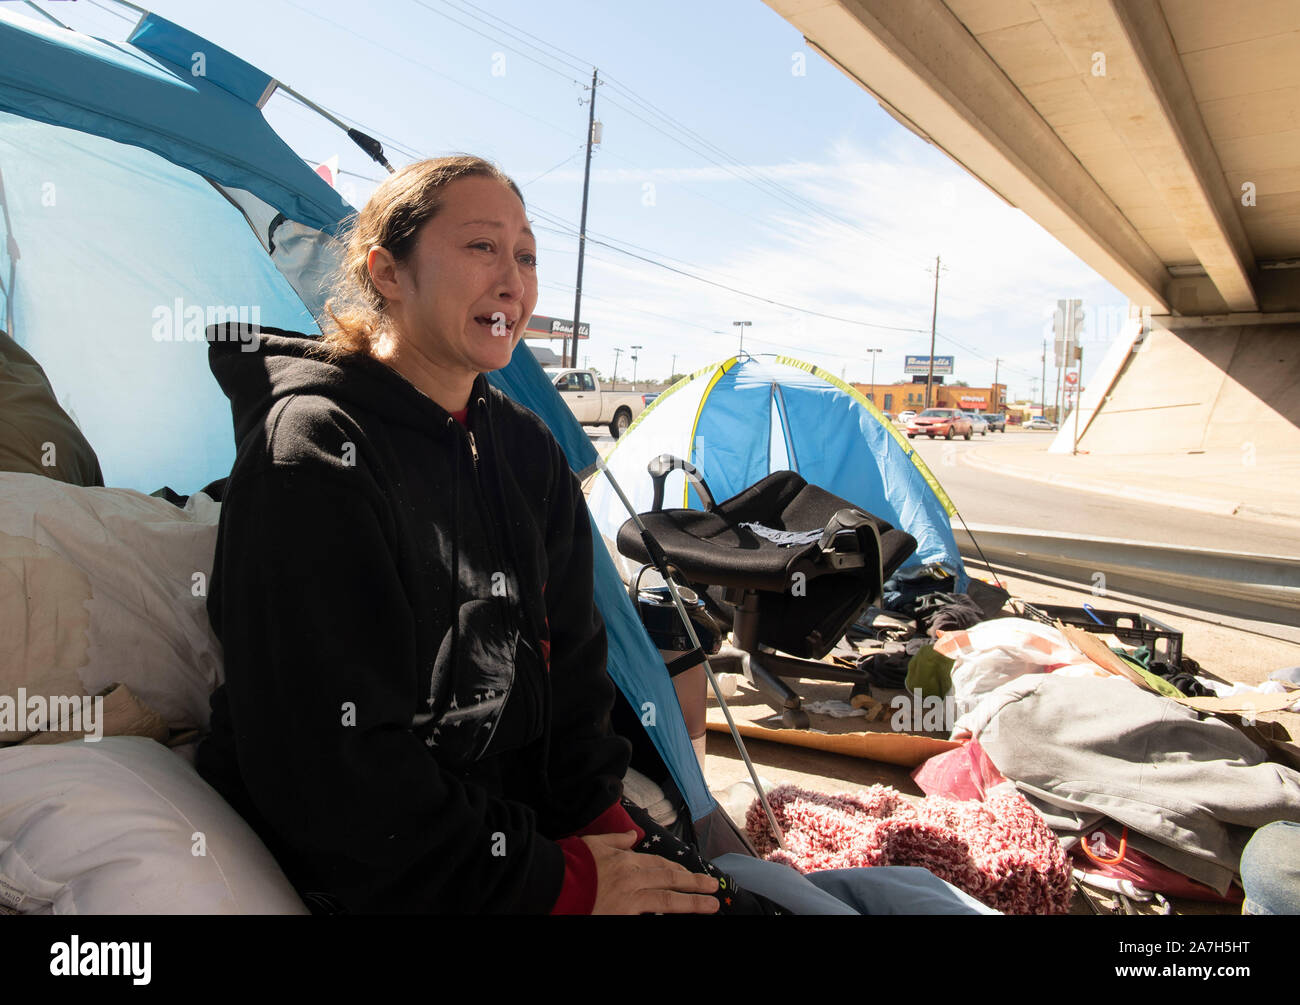 Giorni prima di una repressione minacciato dal governatore del Texas Greg Abbott sul diritto pubblico-di-modo camping, senzatetto Texans, compresi Michelle Pittman, attendono il governatore e autostrada dipartimento azione. La maggior parte sono sicuri dove andranno come rifugi locali sono al di sopra della capacità. Foto Stock